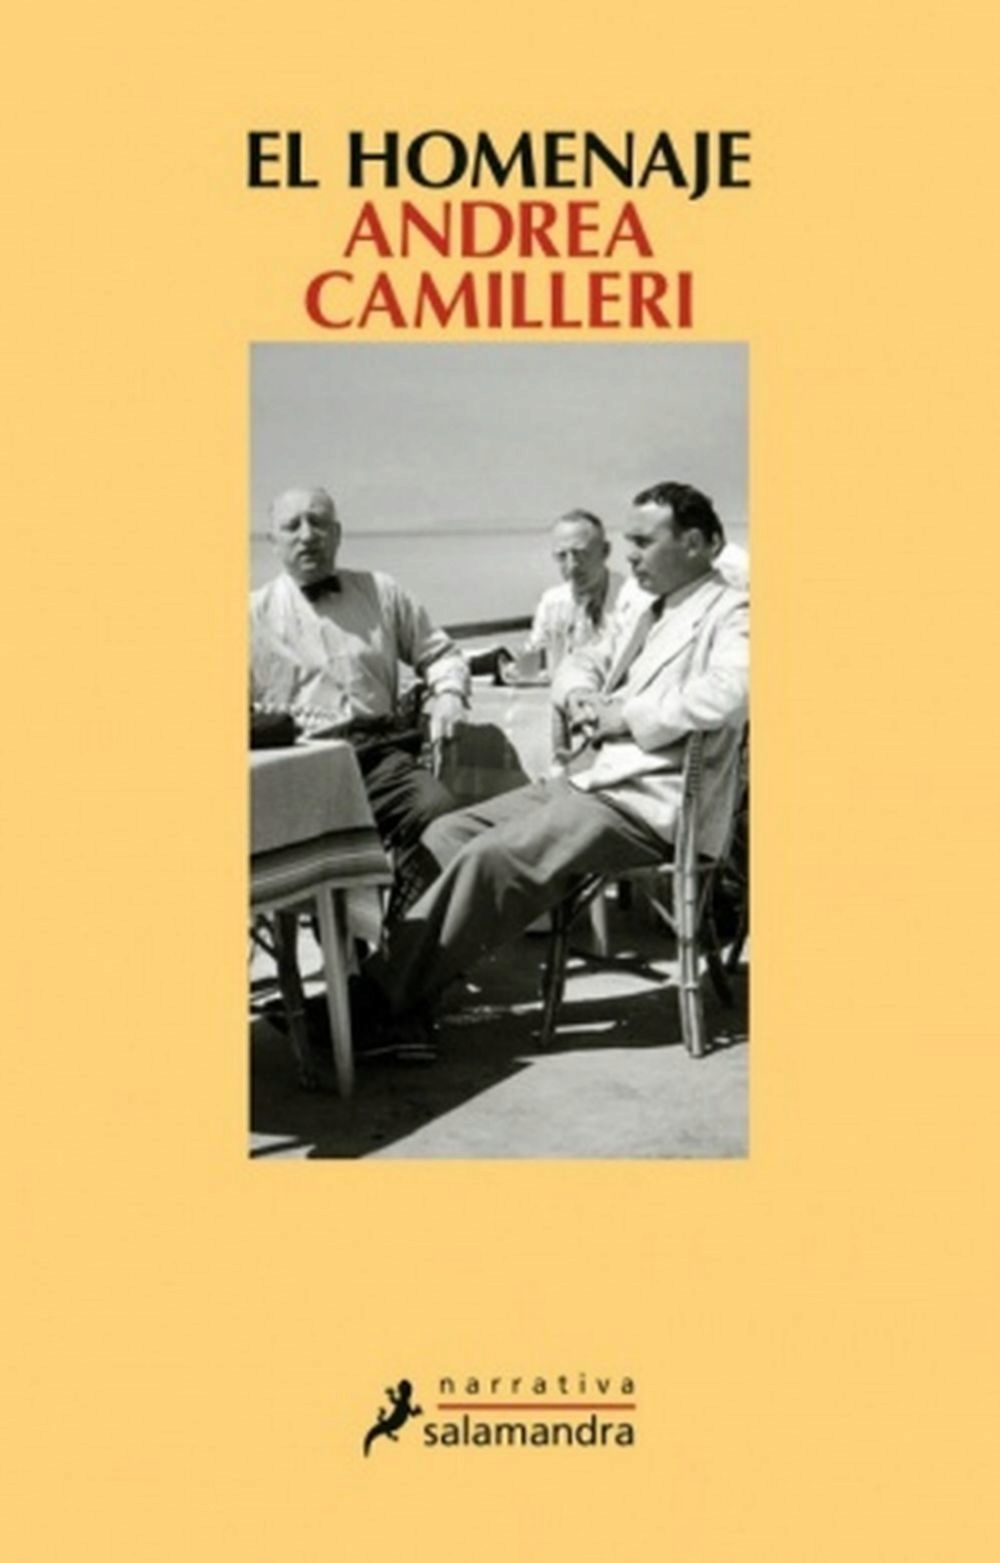 El homenaje, Andrea Camilleri